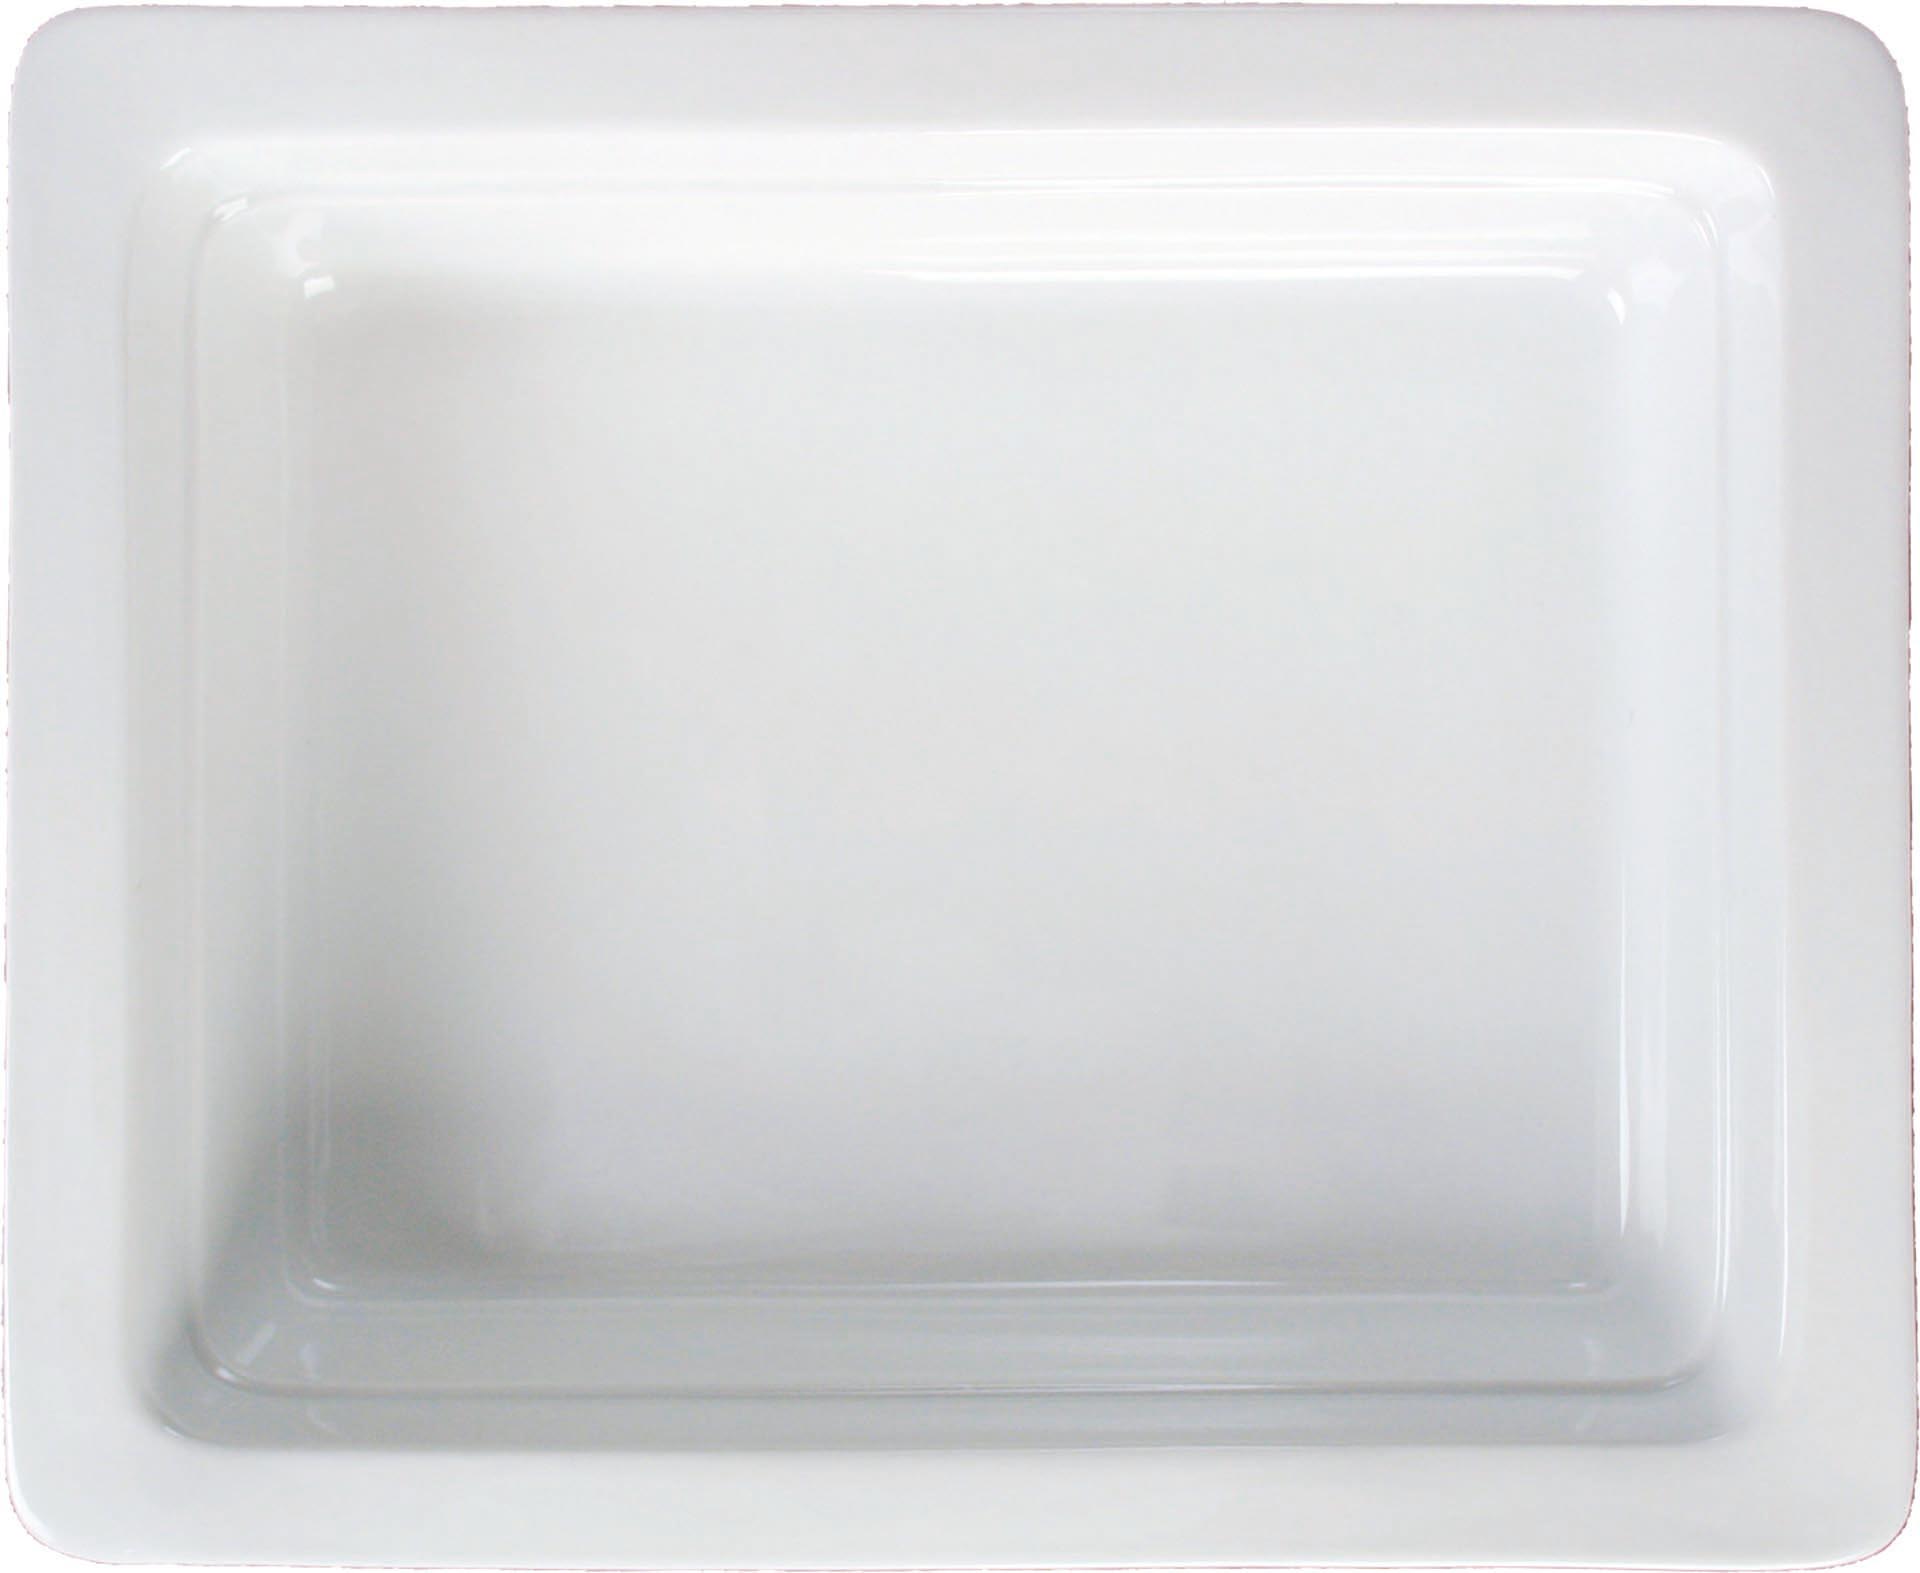 GN-Behälter Porzellan weiss GN 1/3-65 Inhalt: 1,8 Liter